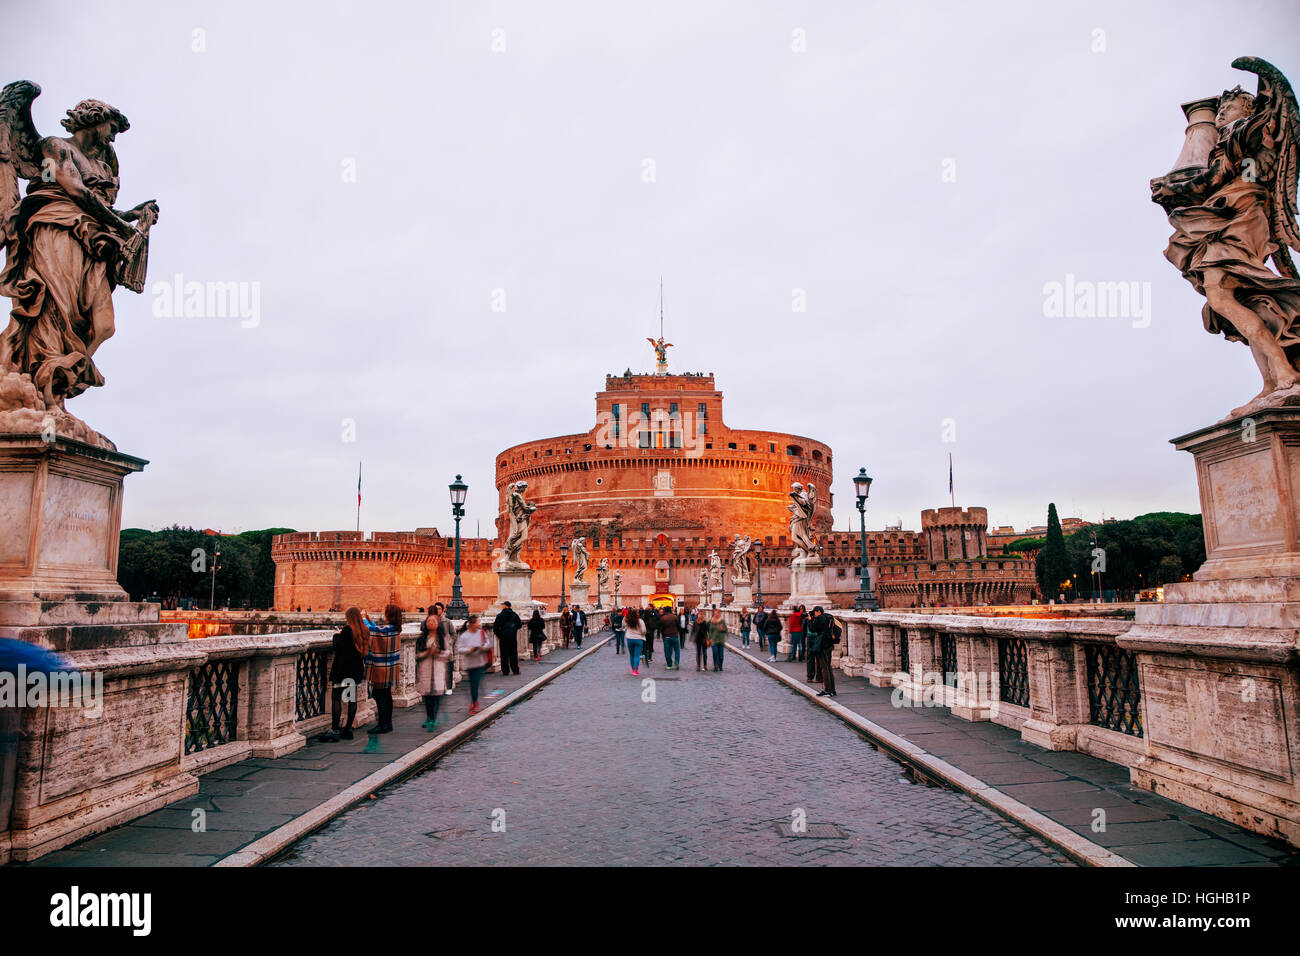 Rom - NOVEMBER 07: Das Mausoleum des Hadrian (Castel und Ponte Sant'Angelo) mit Personen im 7. November 2016 in Rom, Italien. Stockfoto